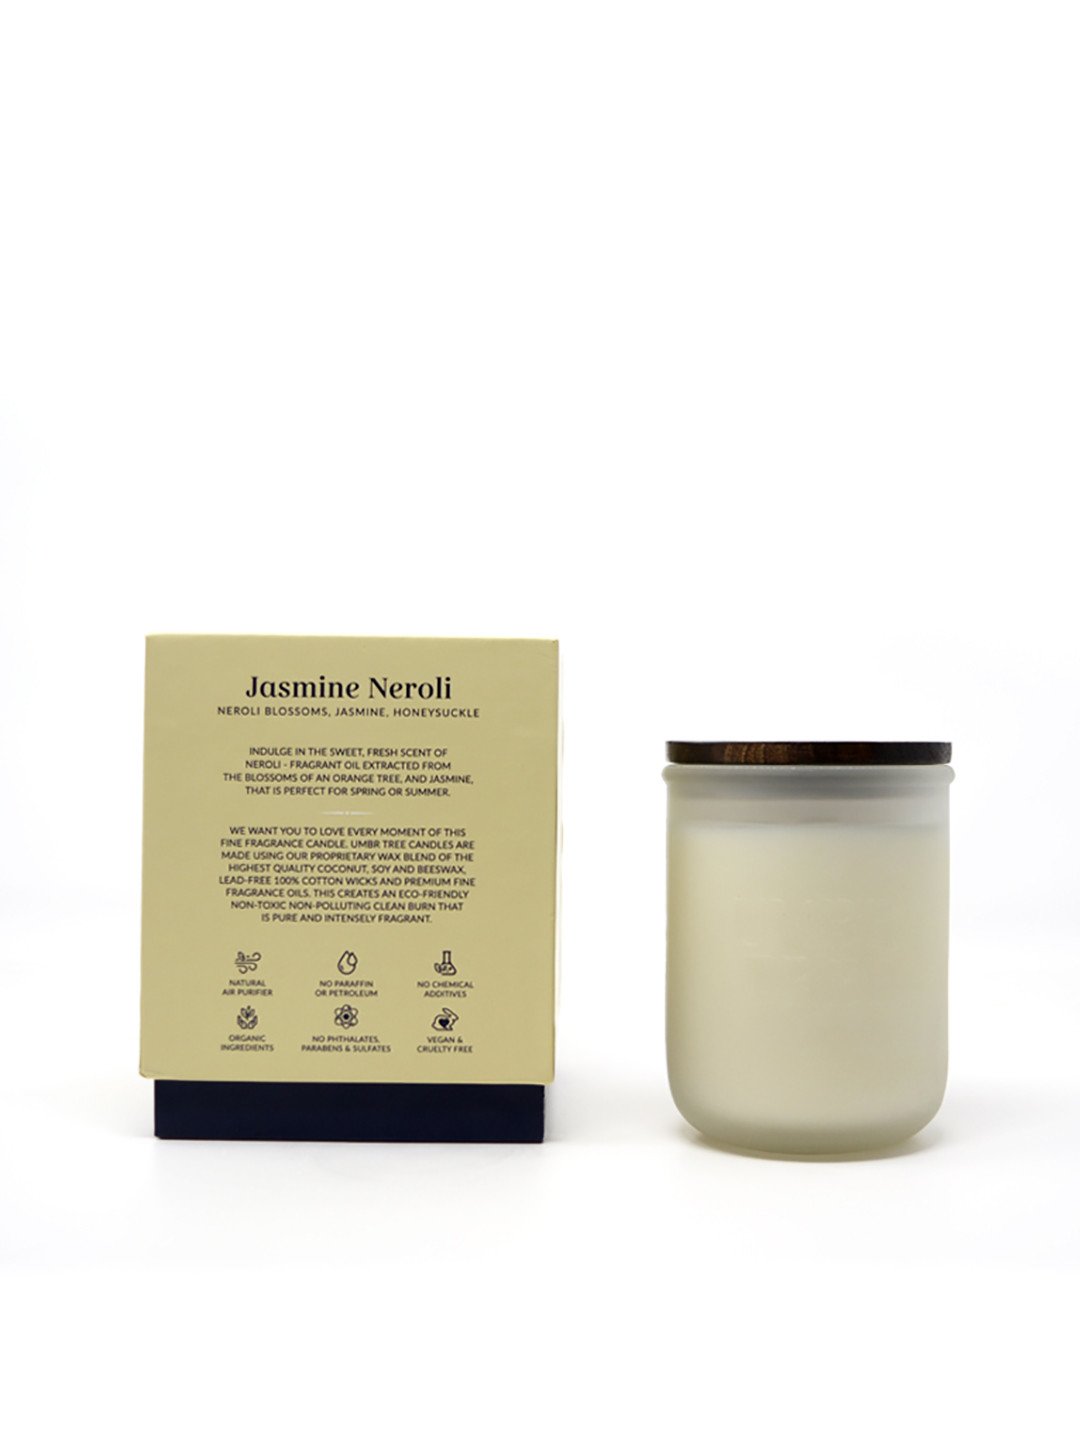 Jasmine Neroli Organic Fine Fragrance Candle 255 gm